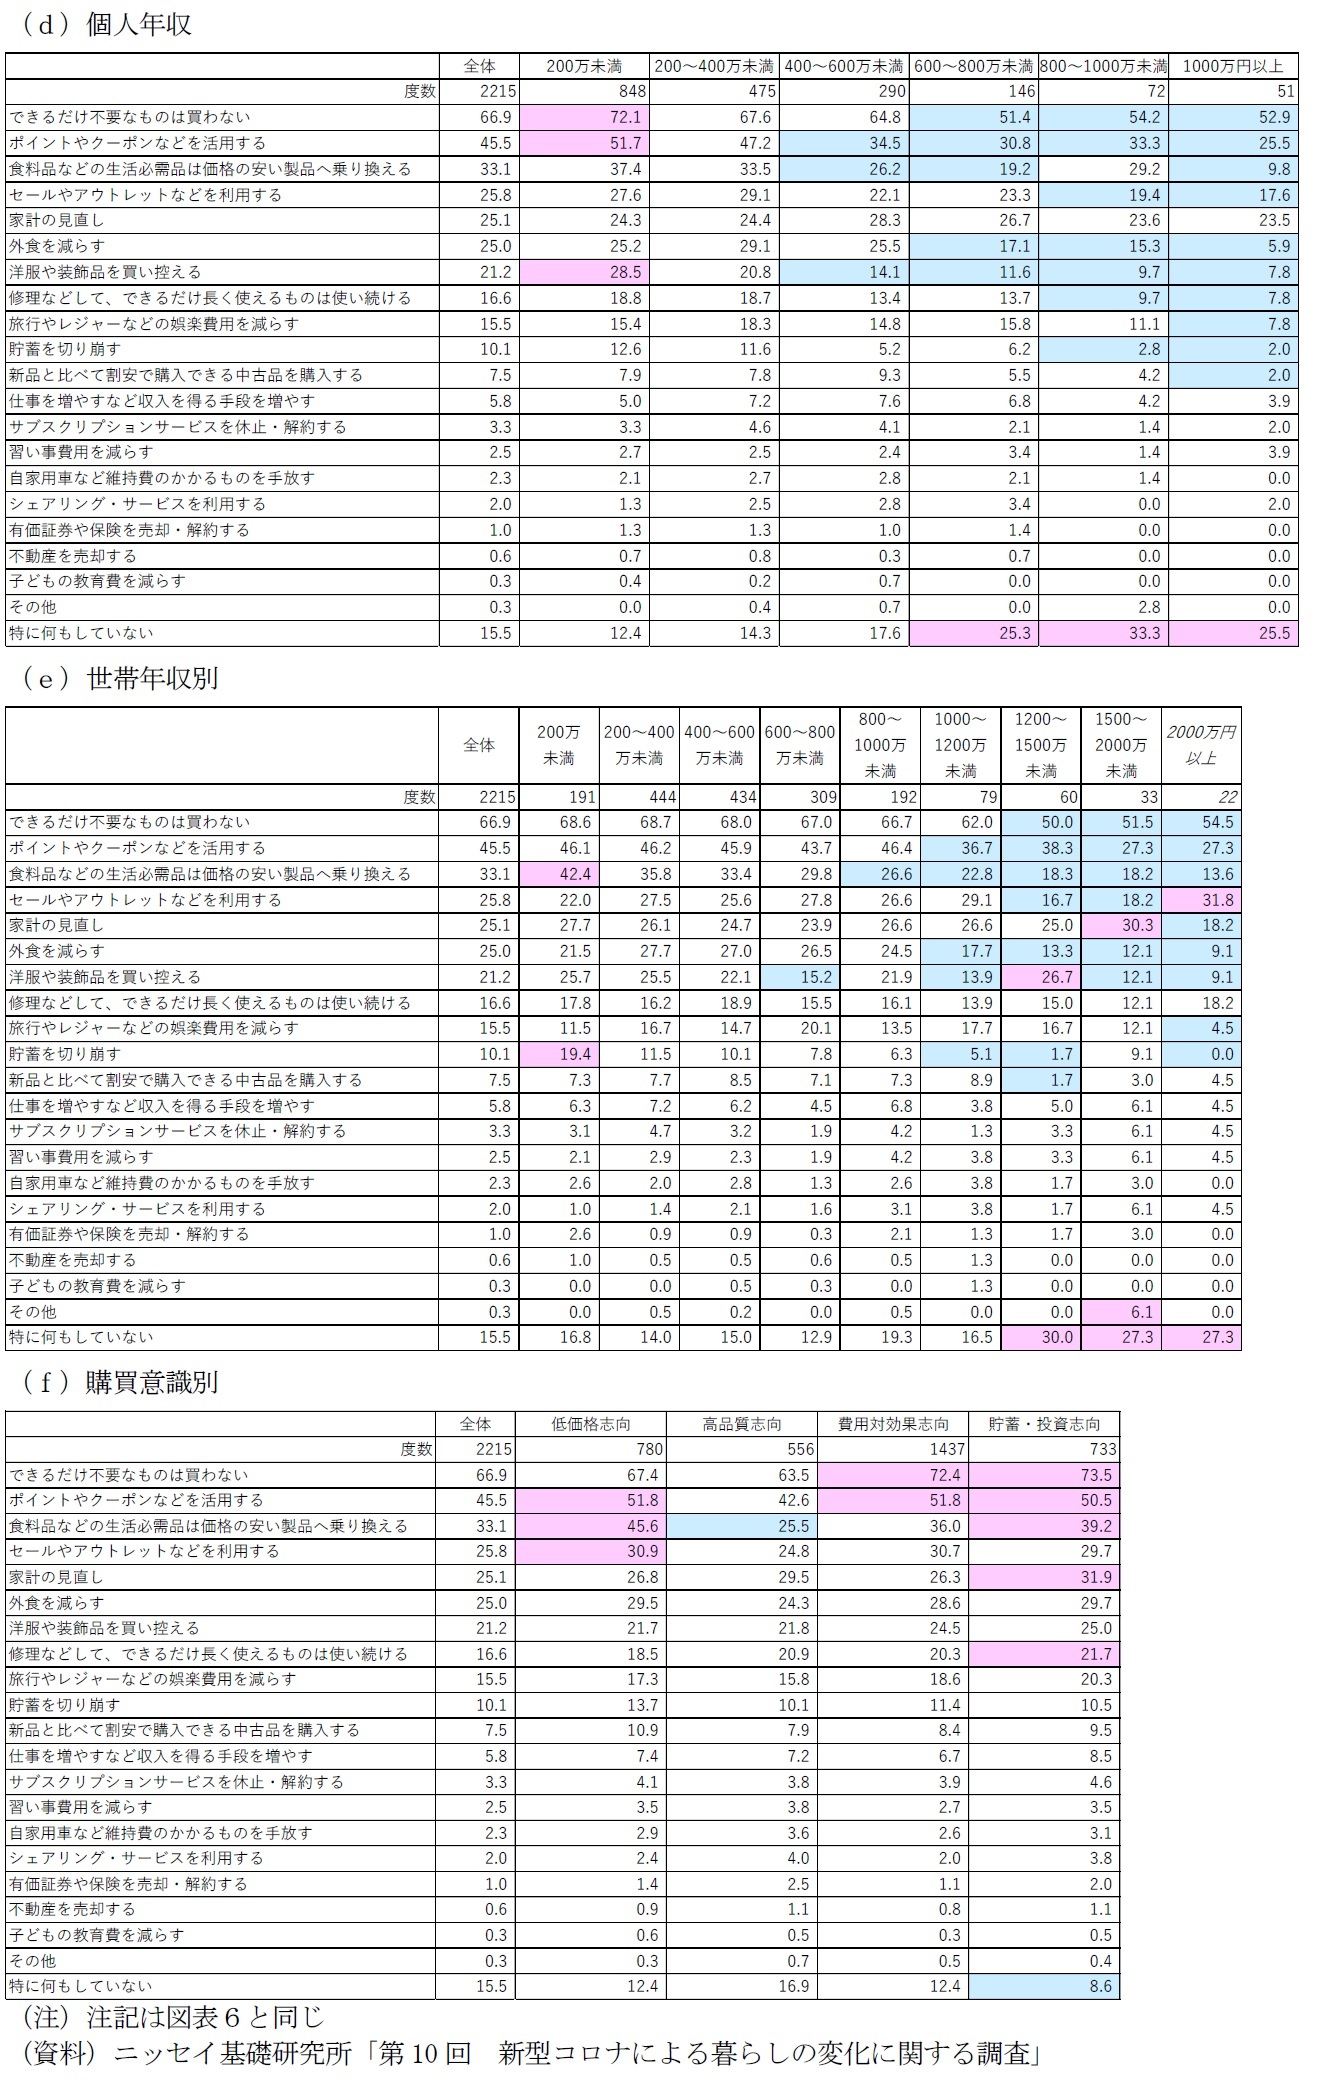 図表８－２　属性別に見た日本国内の物価上昇を実感して取った行動（複数選択）